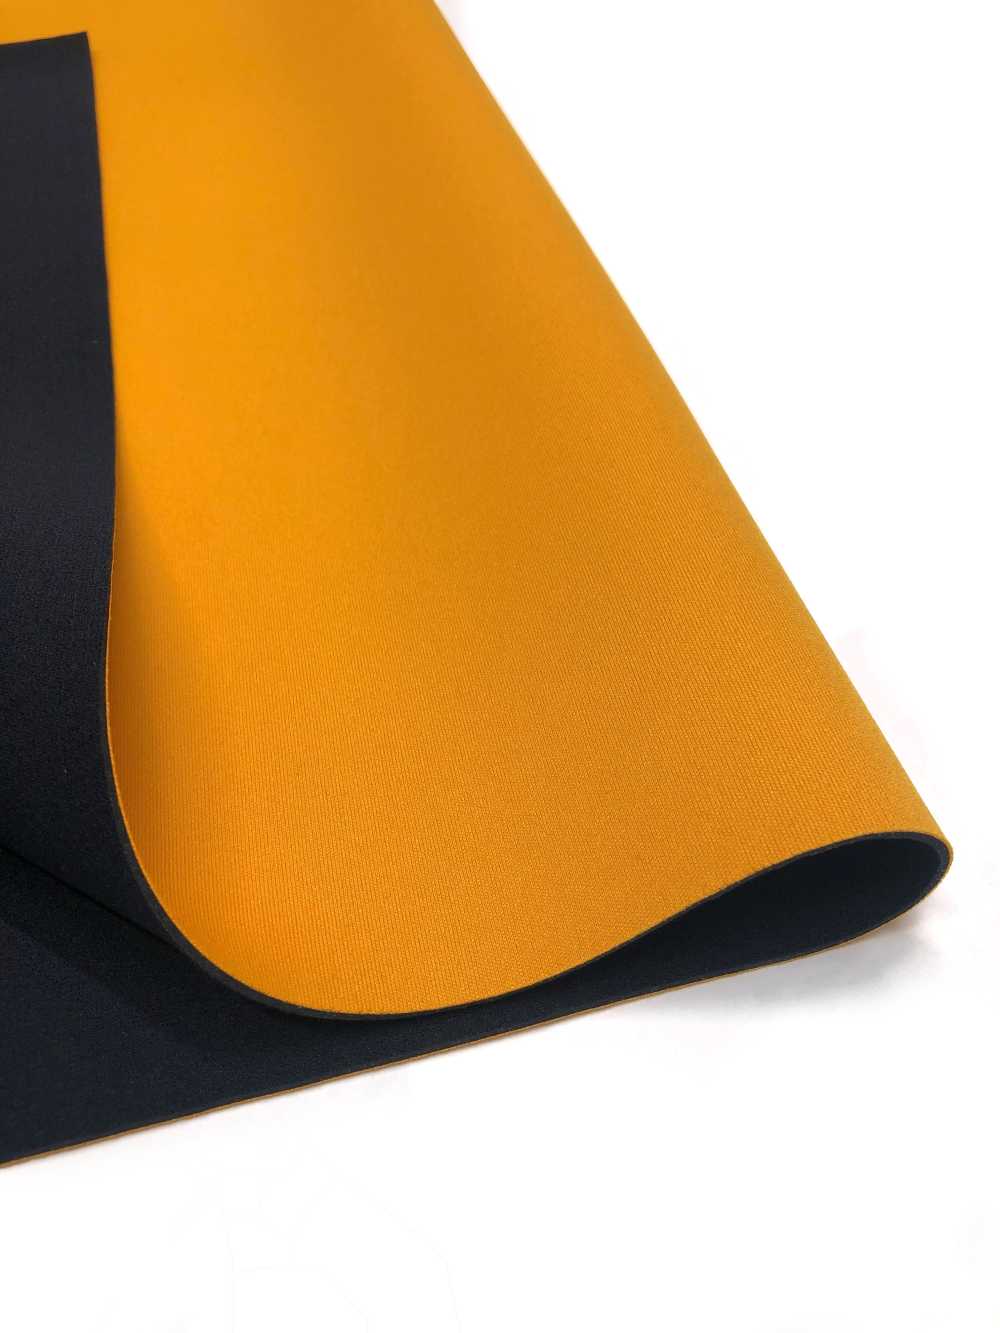 31041 HM AL Orange/PS Noir 95 × 170cm[Fabrication De Textile] Tortue